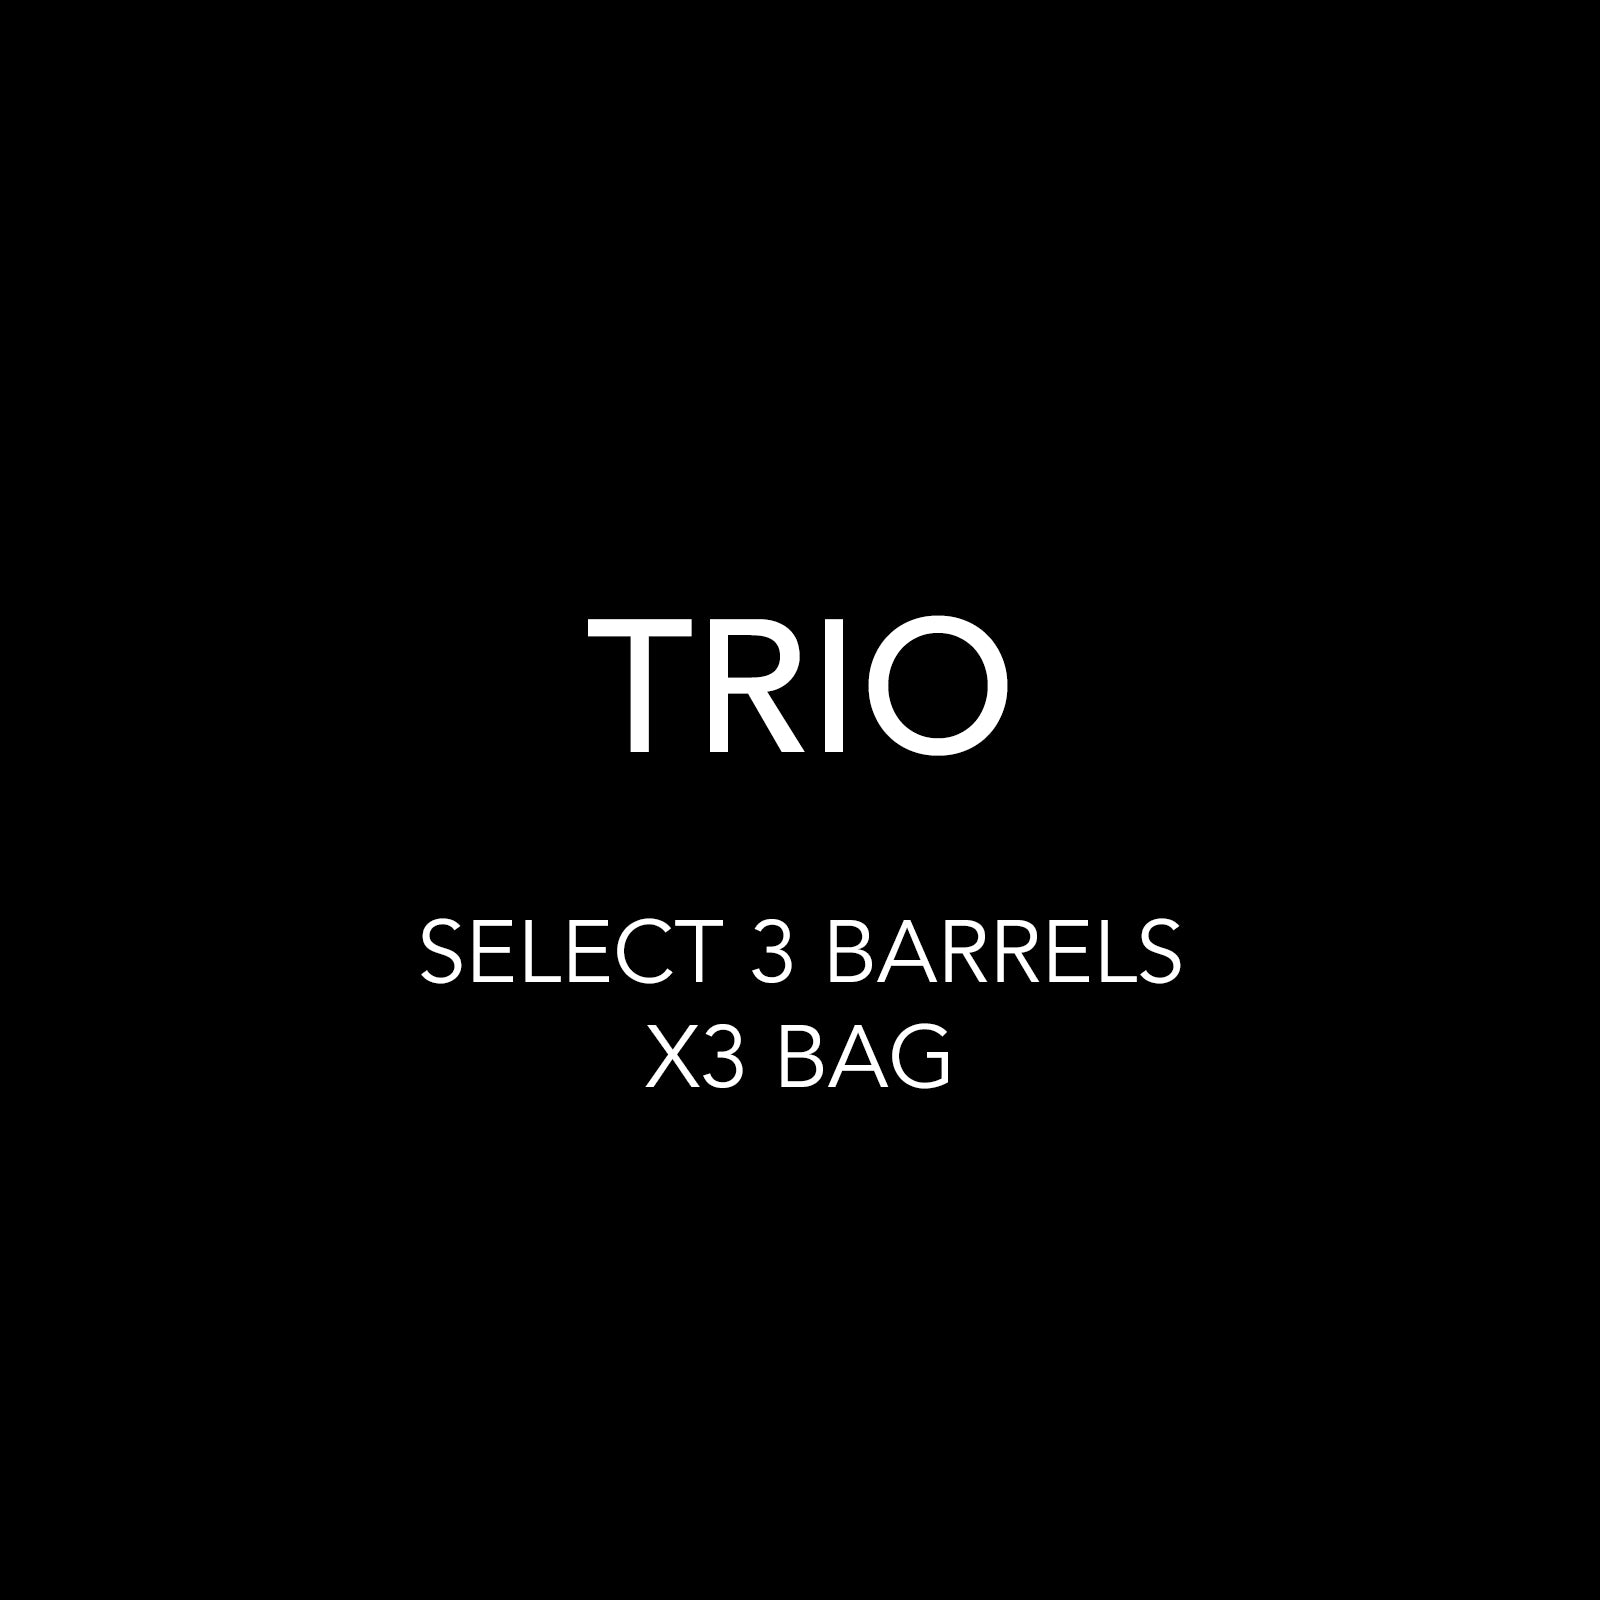 TRIO - YOU PICK 3 BARRELS